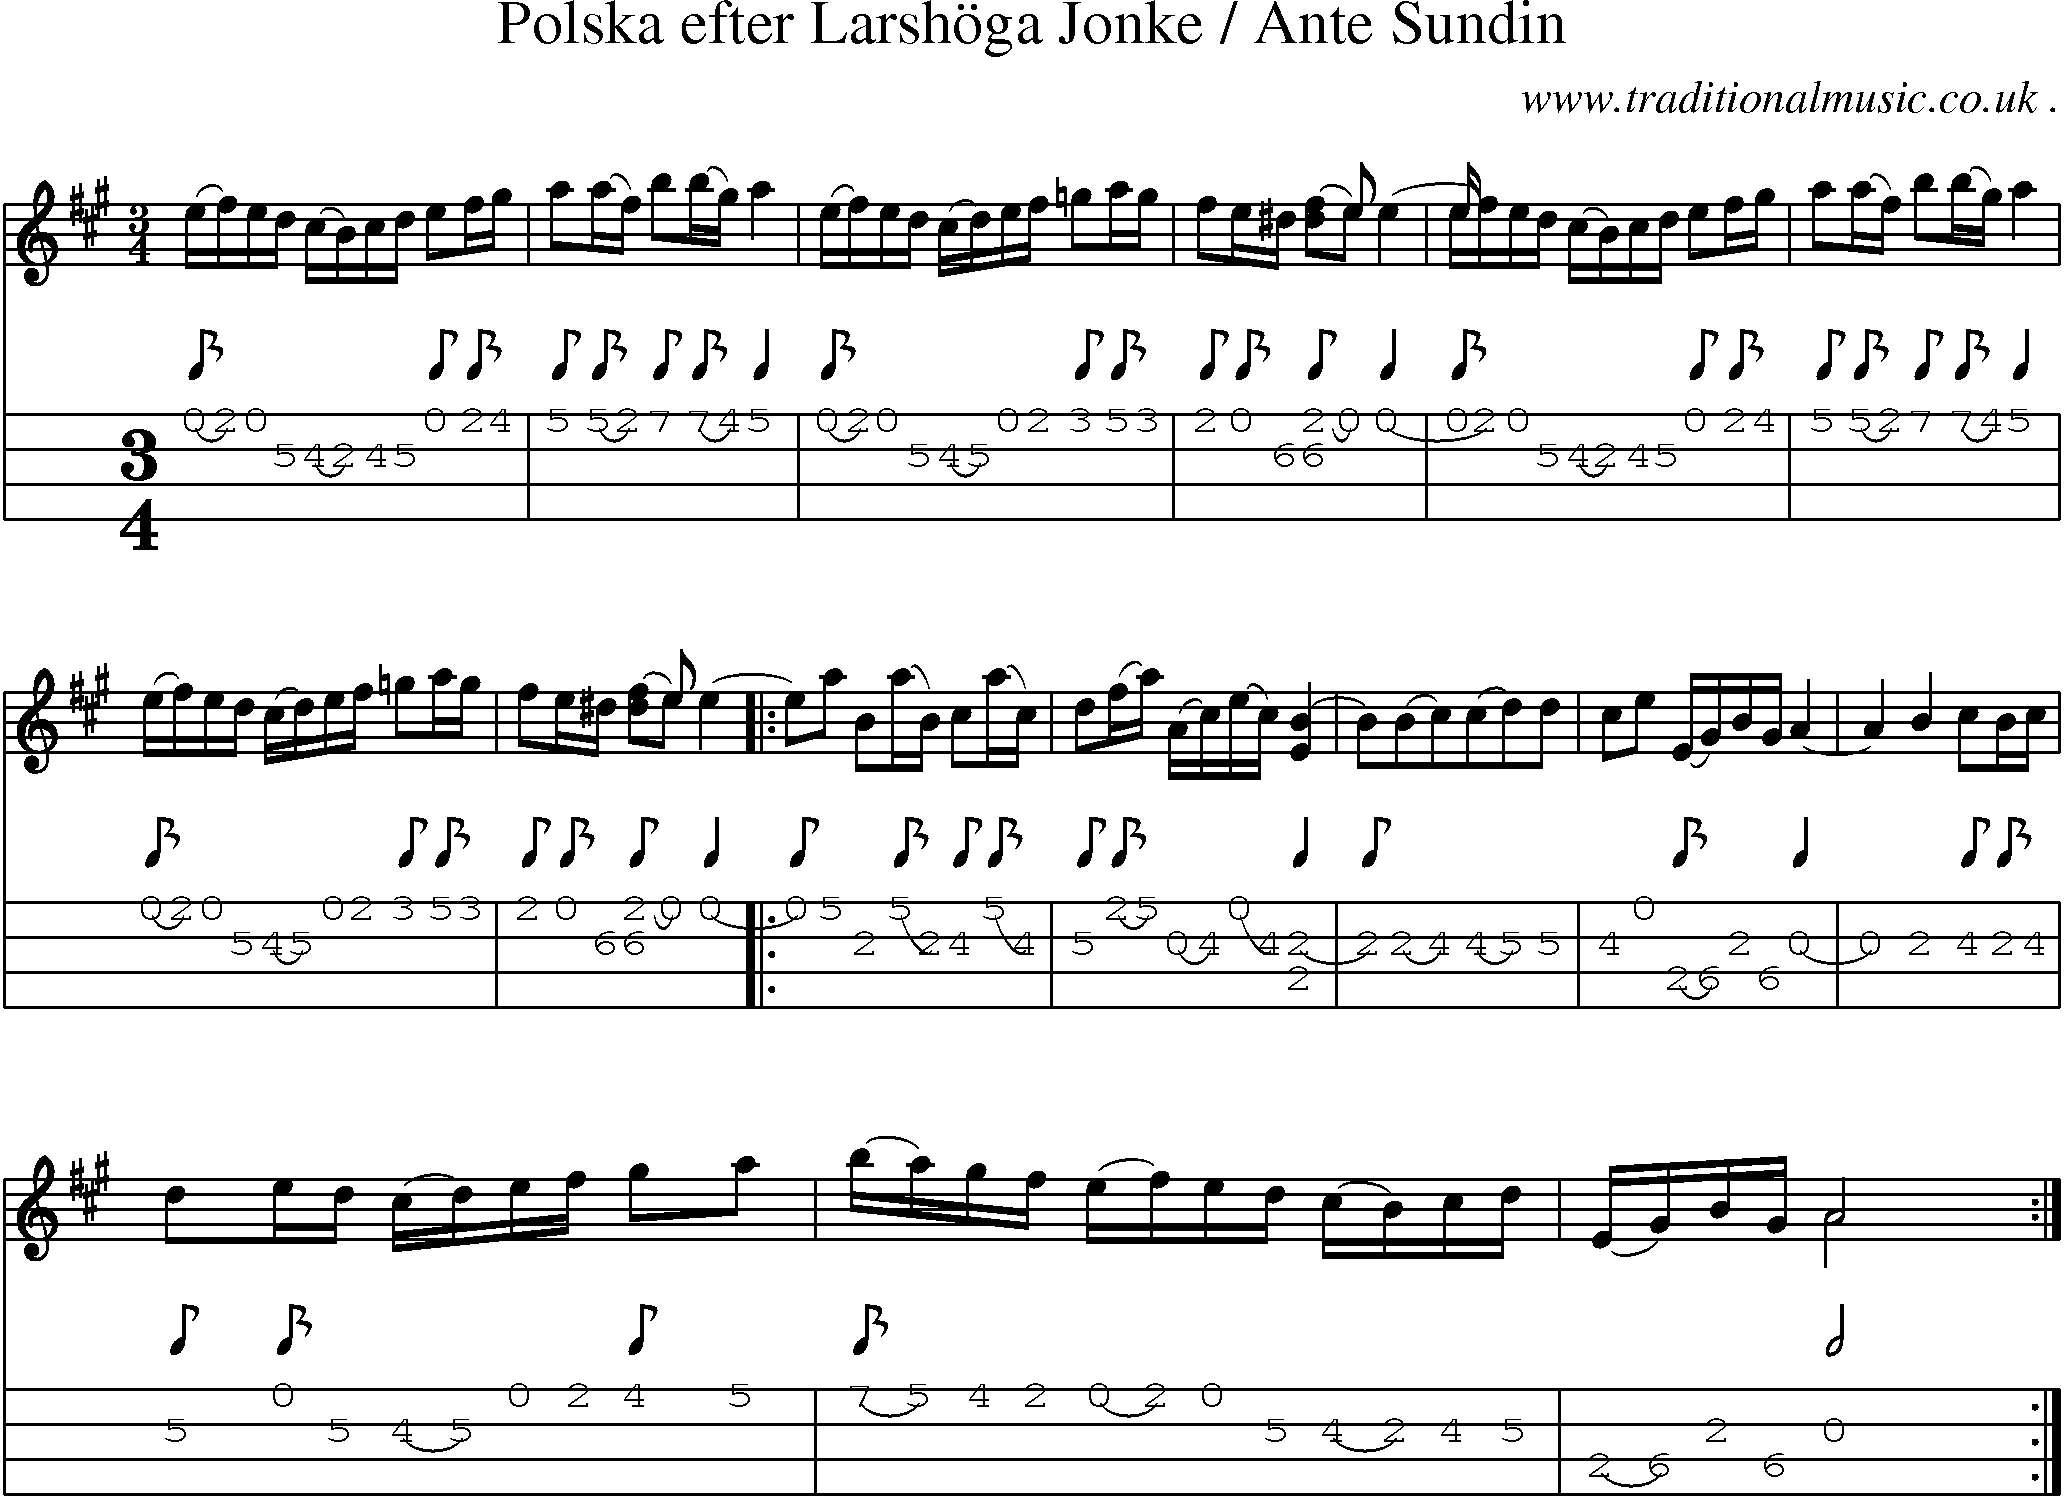 Sheet-Music and Mandolin Tabs for Polska Efter Larshoga Jonke  Ante Sundin